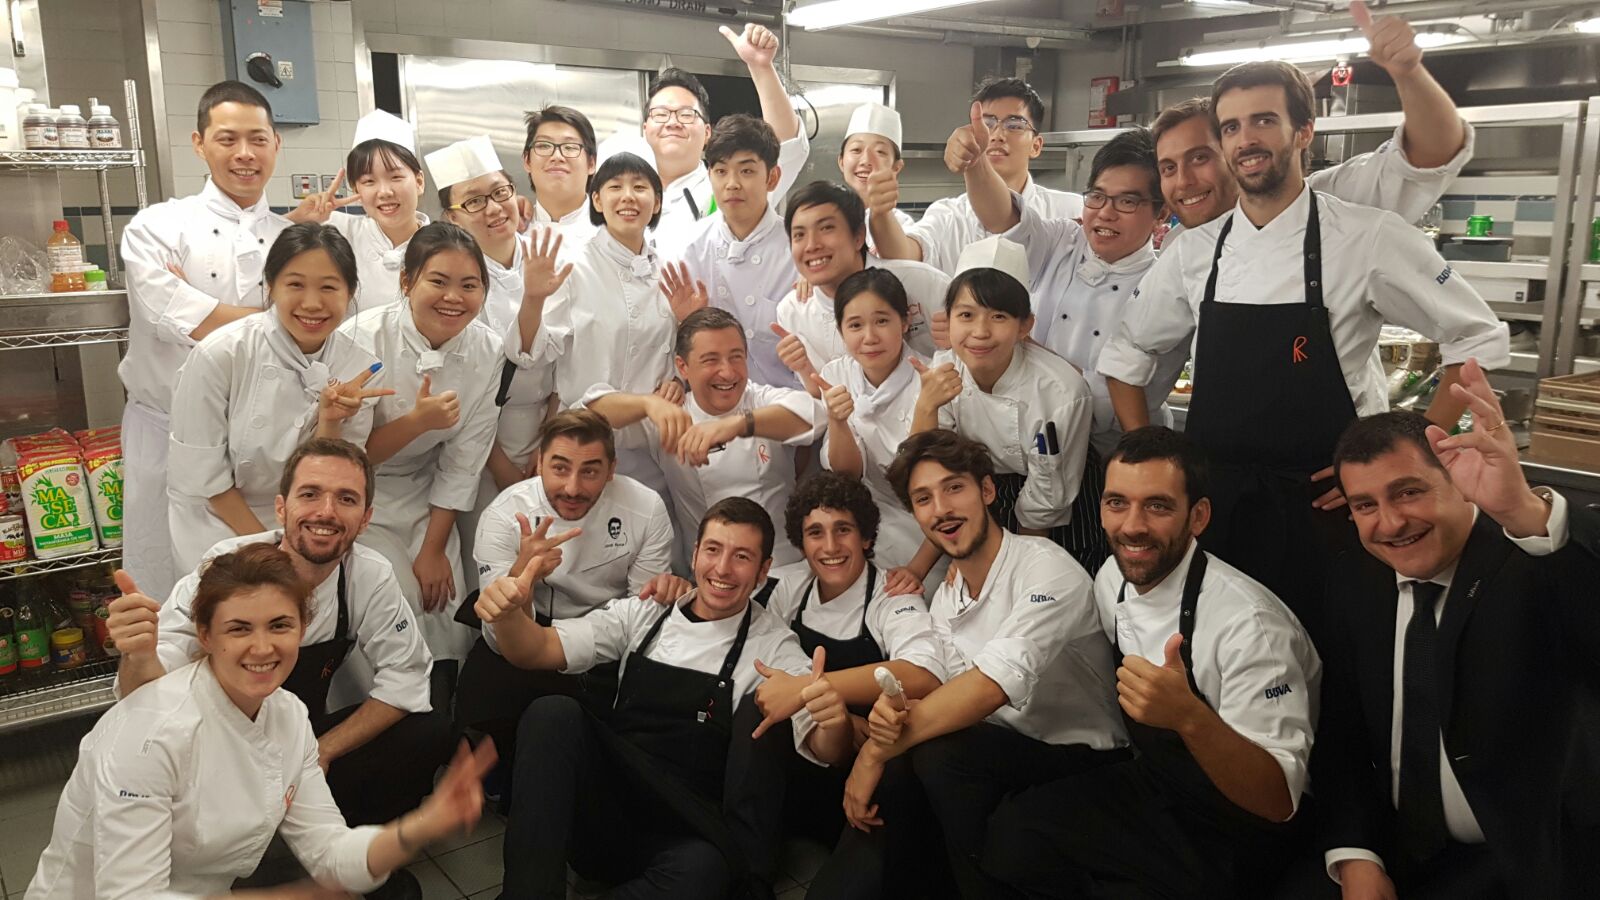 Fotografía de Despedida de todo el equipo de El Celler de Can Roca con los estudiantes del Culinary Arts de Hong Kong